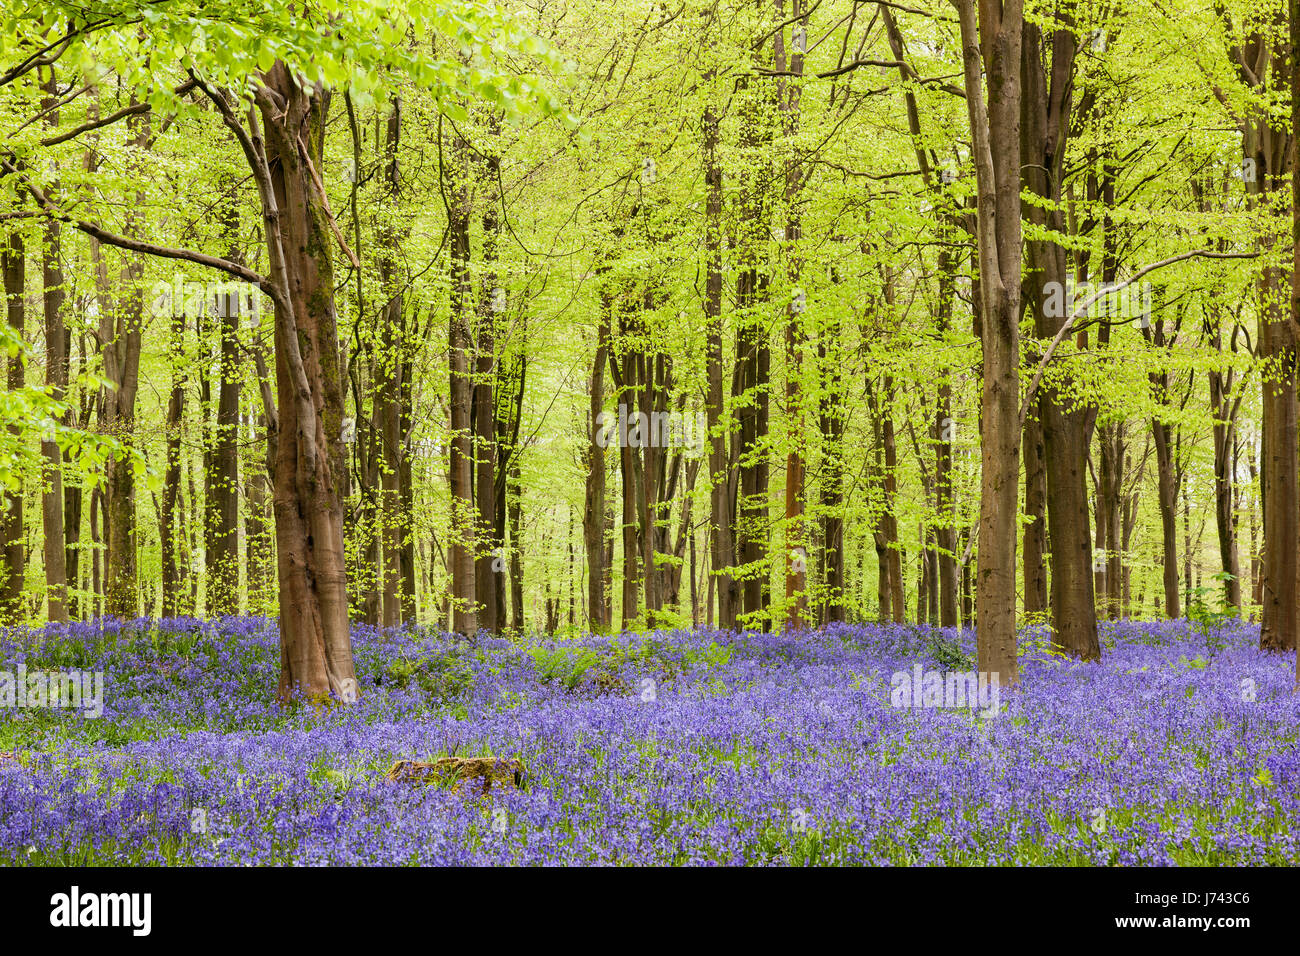 Bluebells à West Woods bluebell Wood, près de Marlborough, Wiltshire, Angleterre, Royaume-Uni Banque D'Images